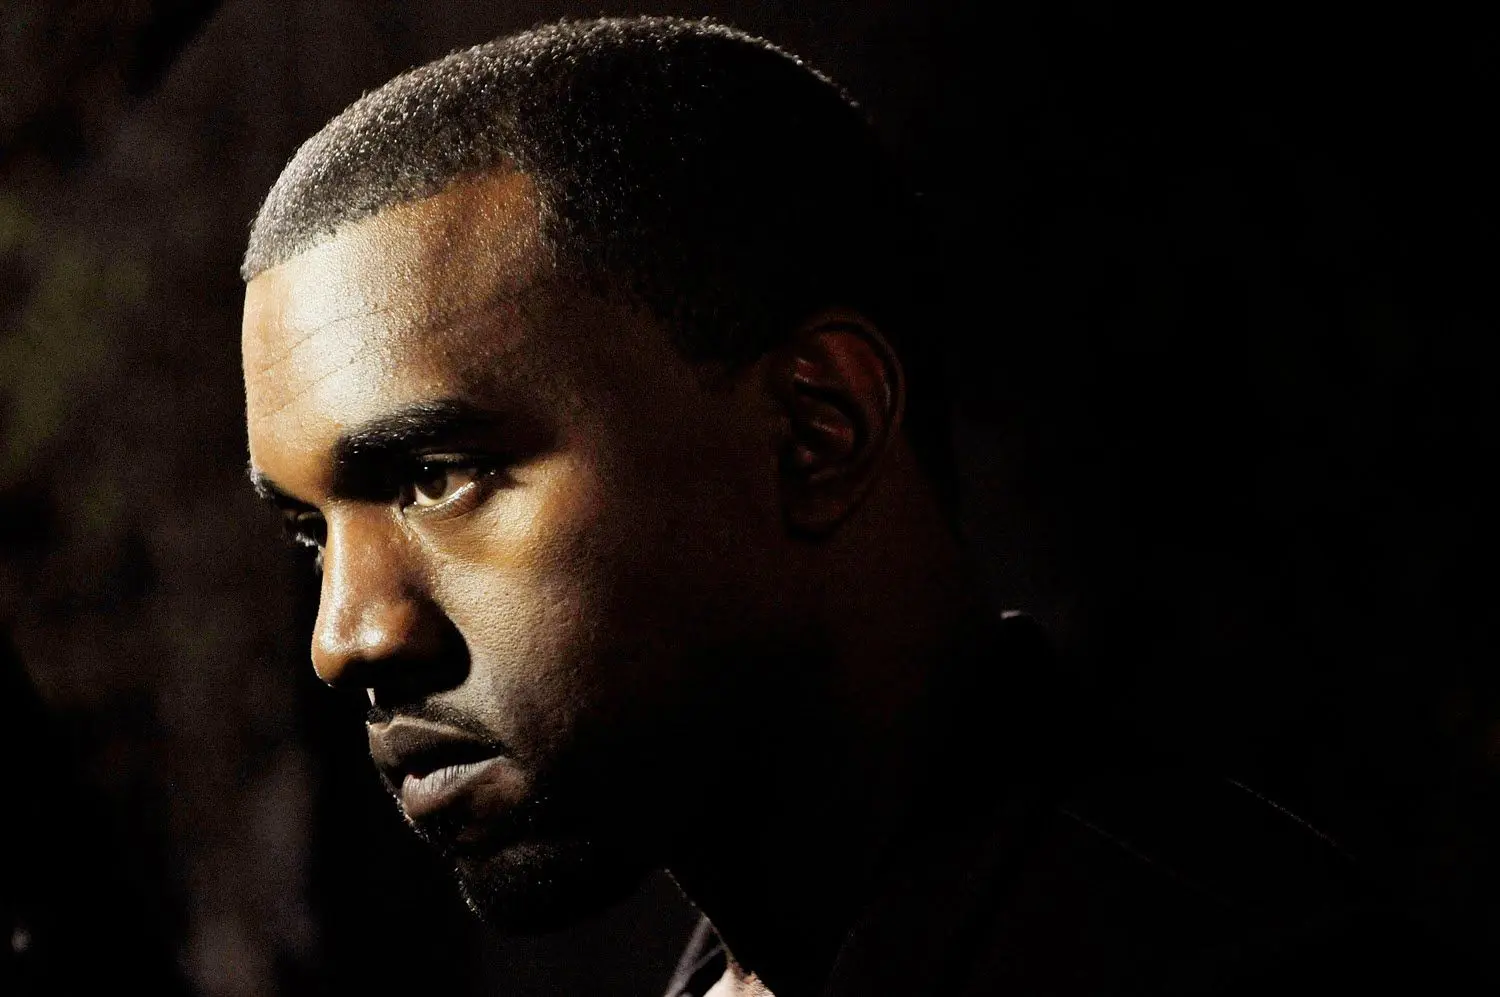 Le Kanye West d’avant : une mixtape inédite de 2001 émerge